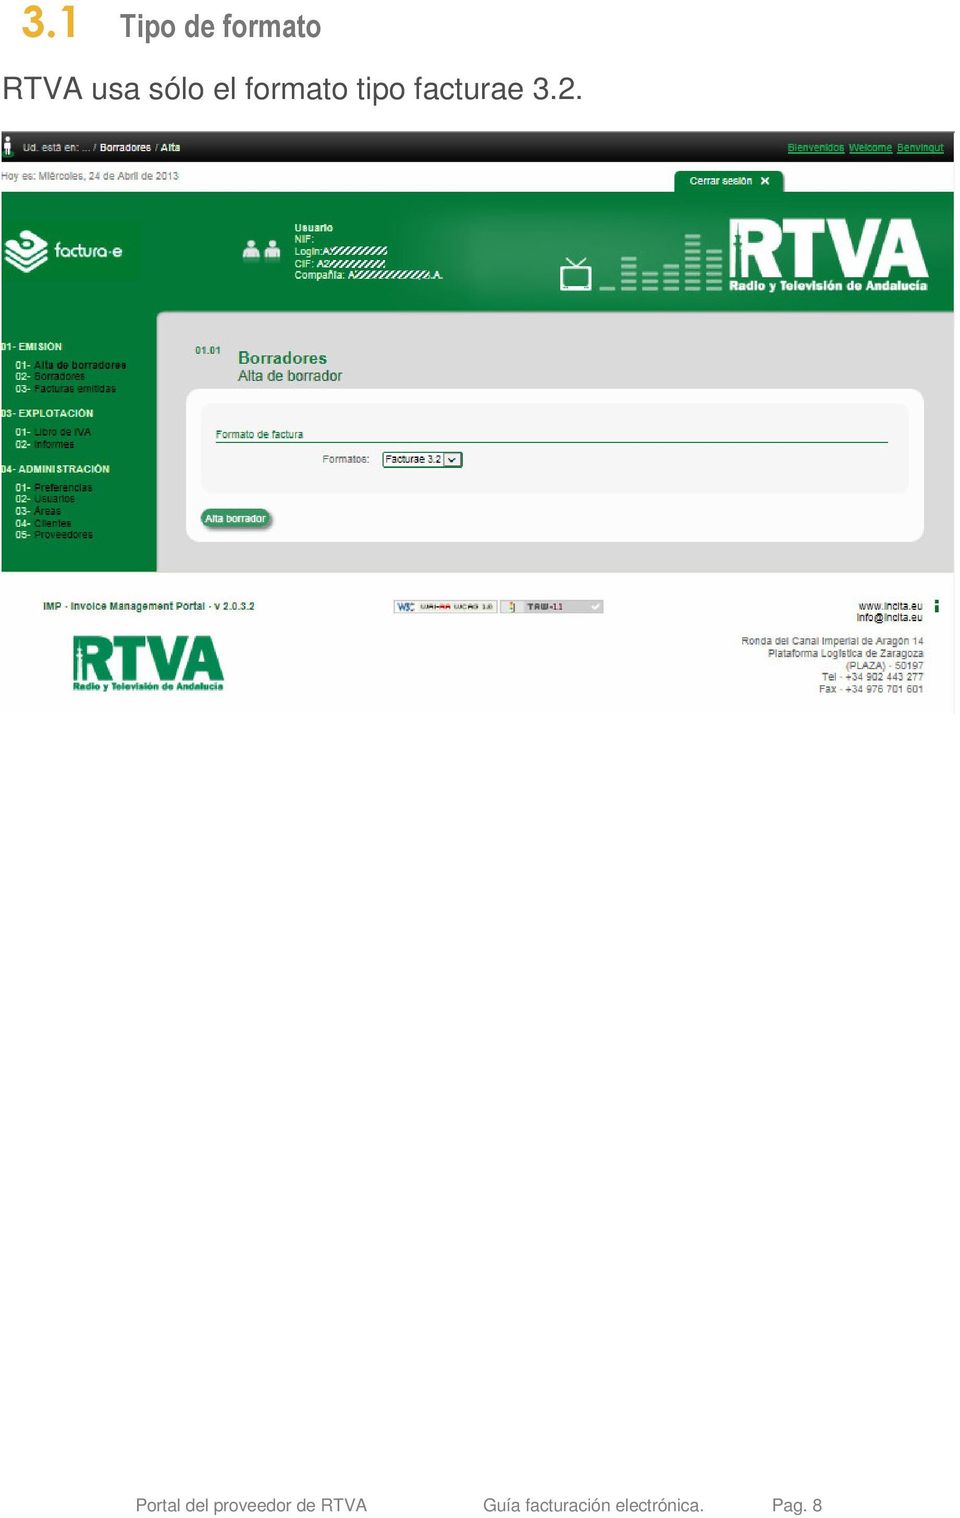 2. Portal del proveedor de RTVA